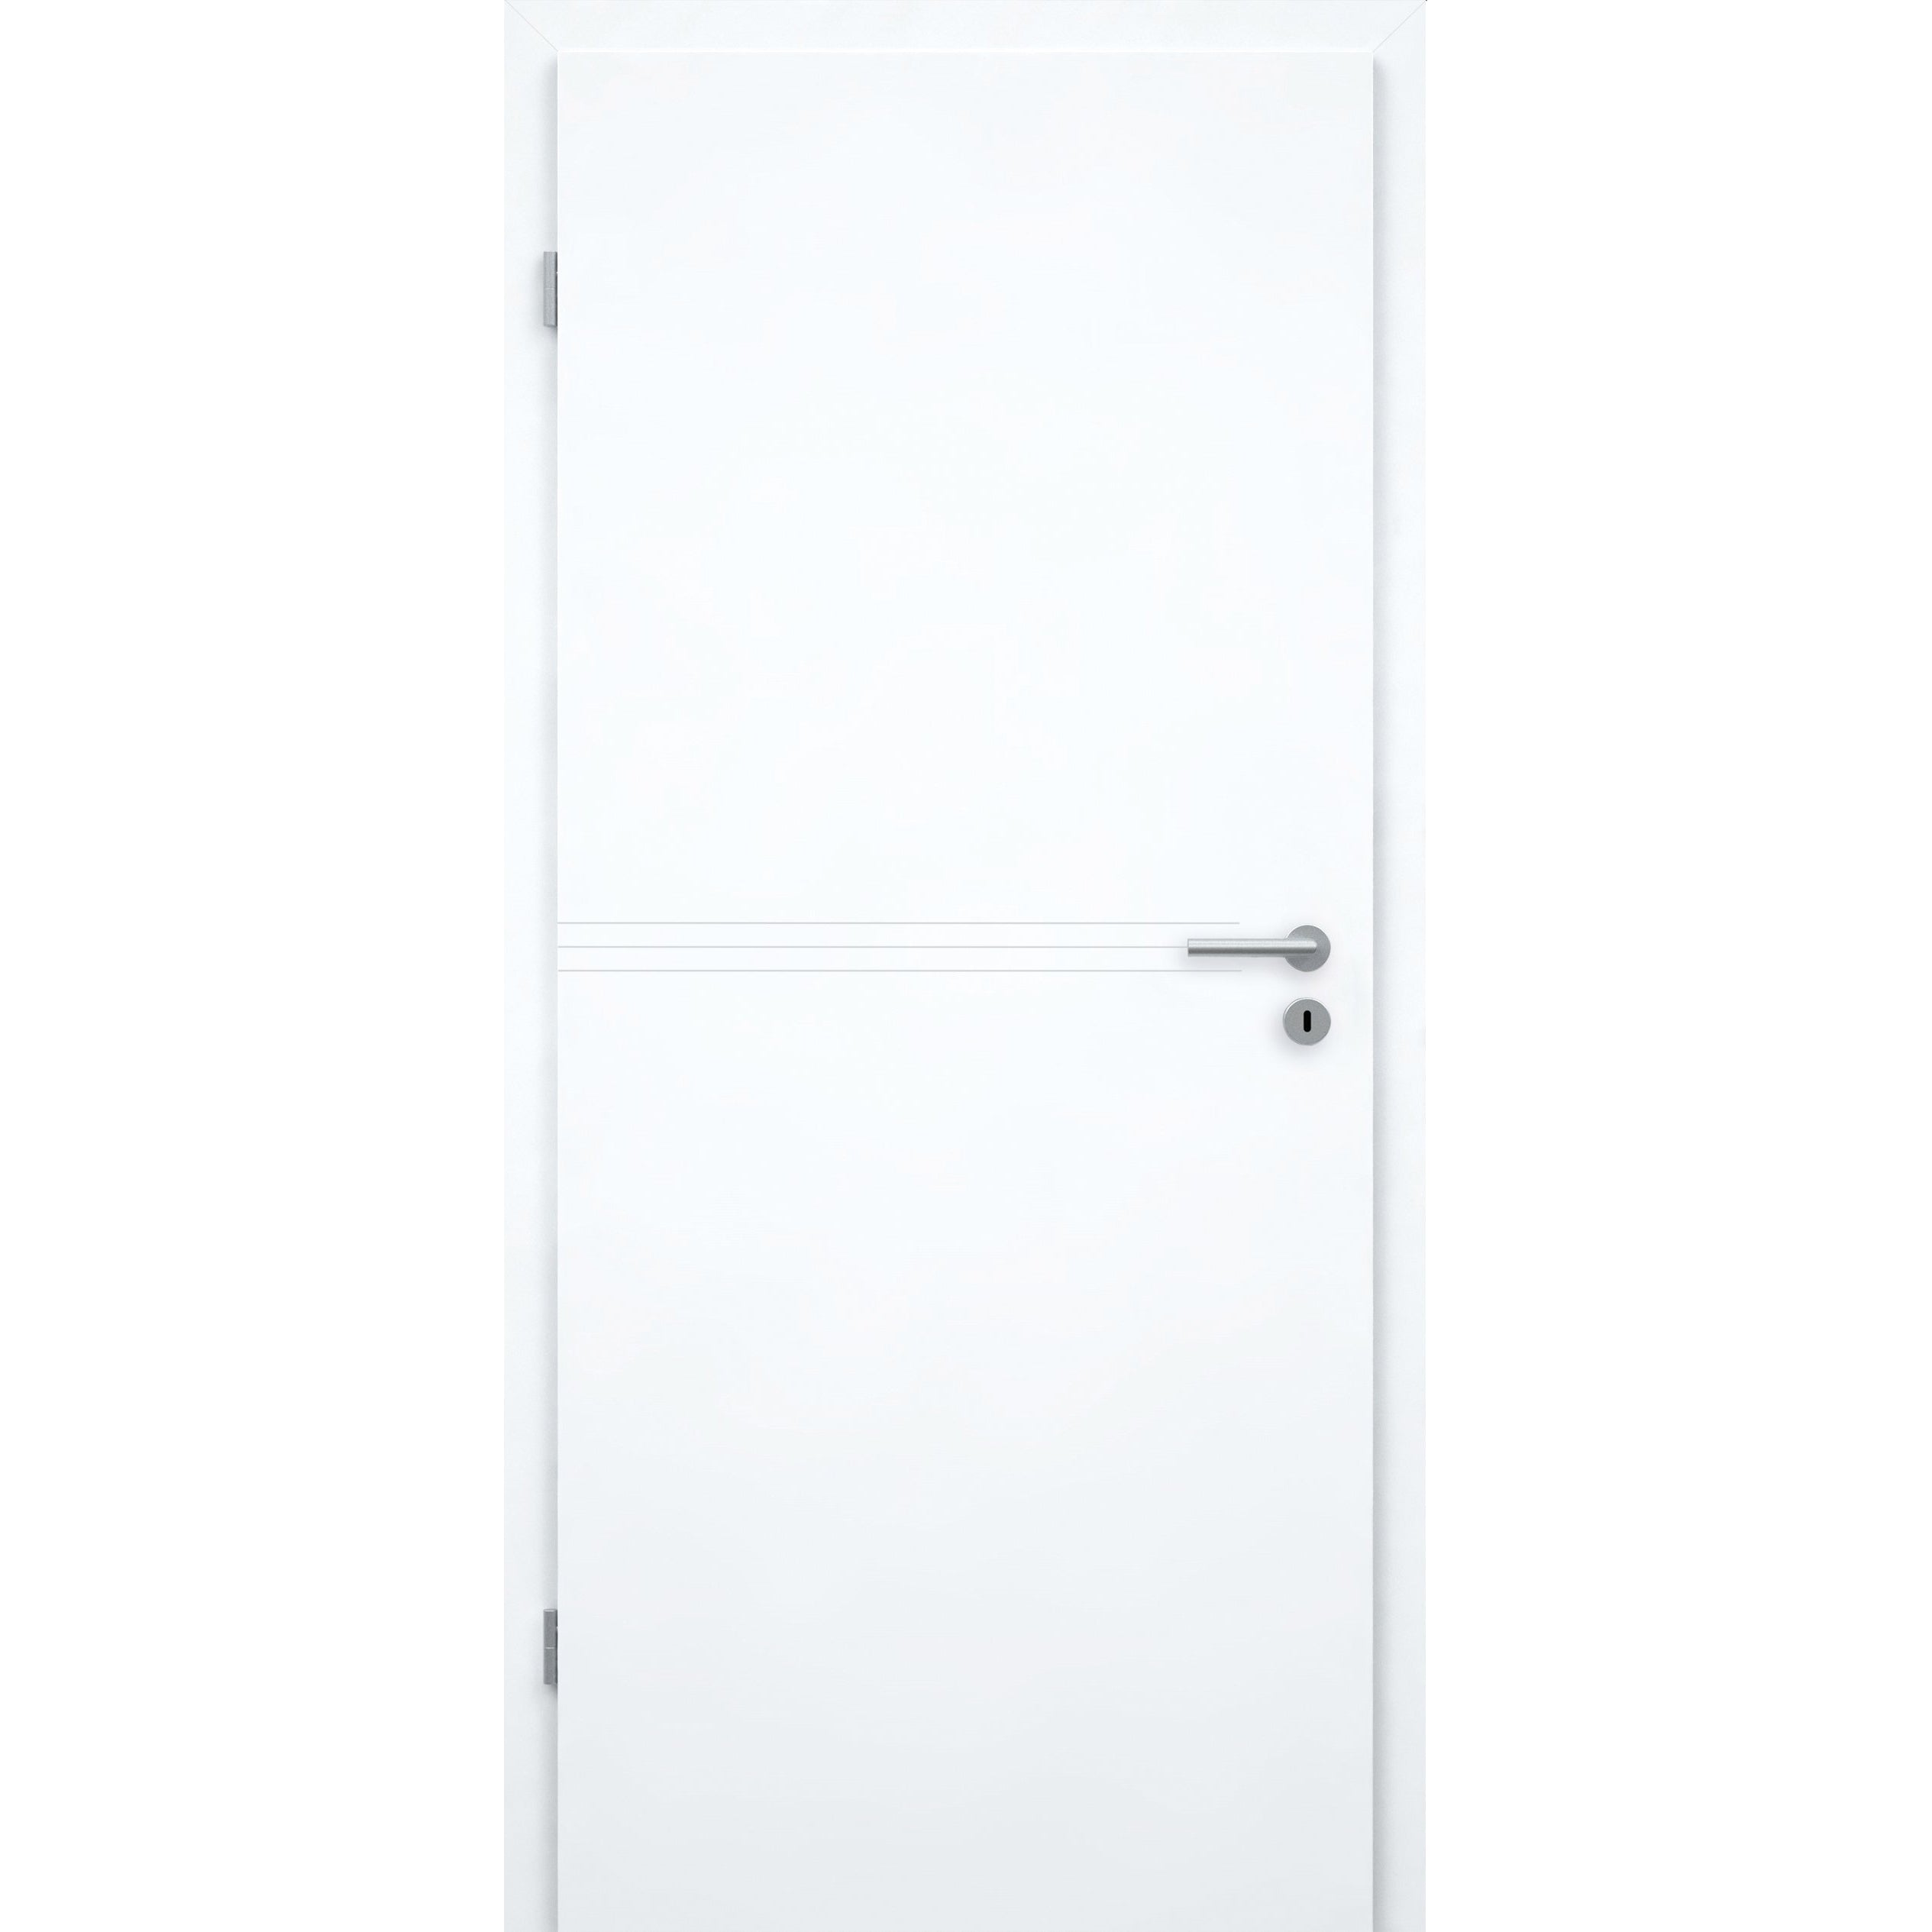 Zimmertür brillant-weiß 3 Rillen Designkante - Modell Designtür Q33